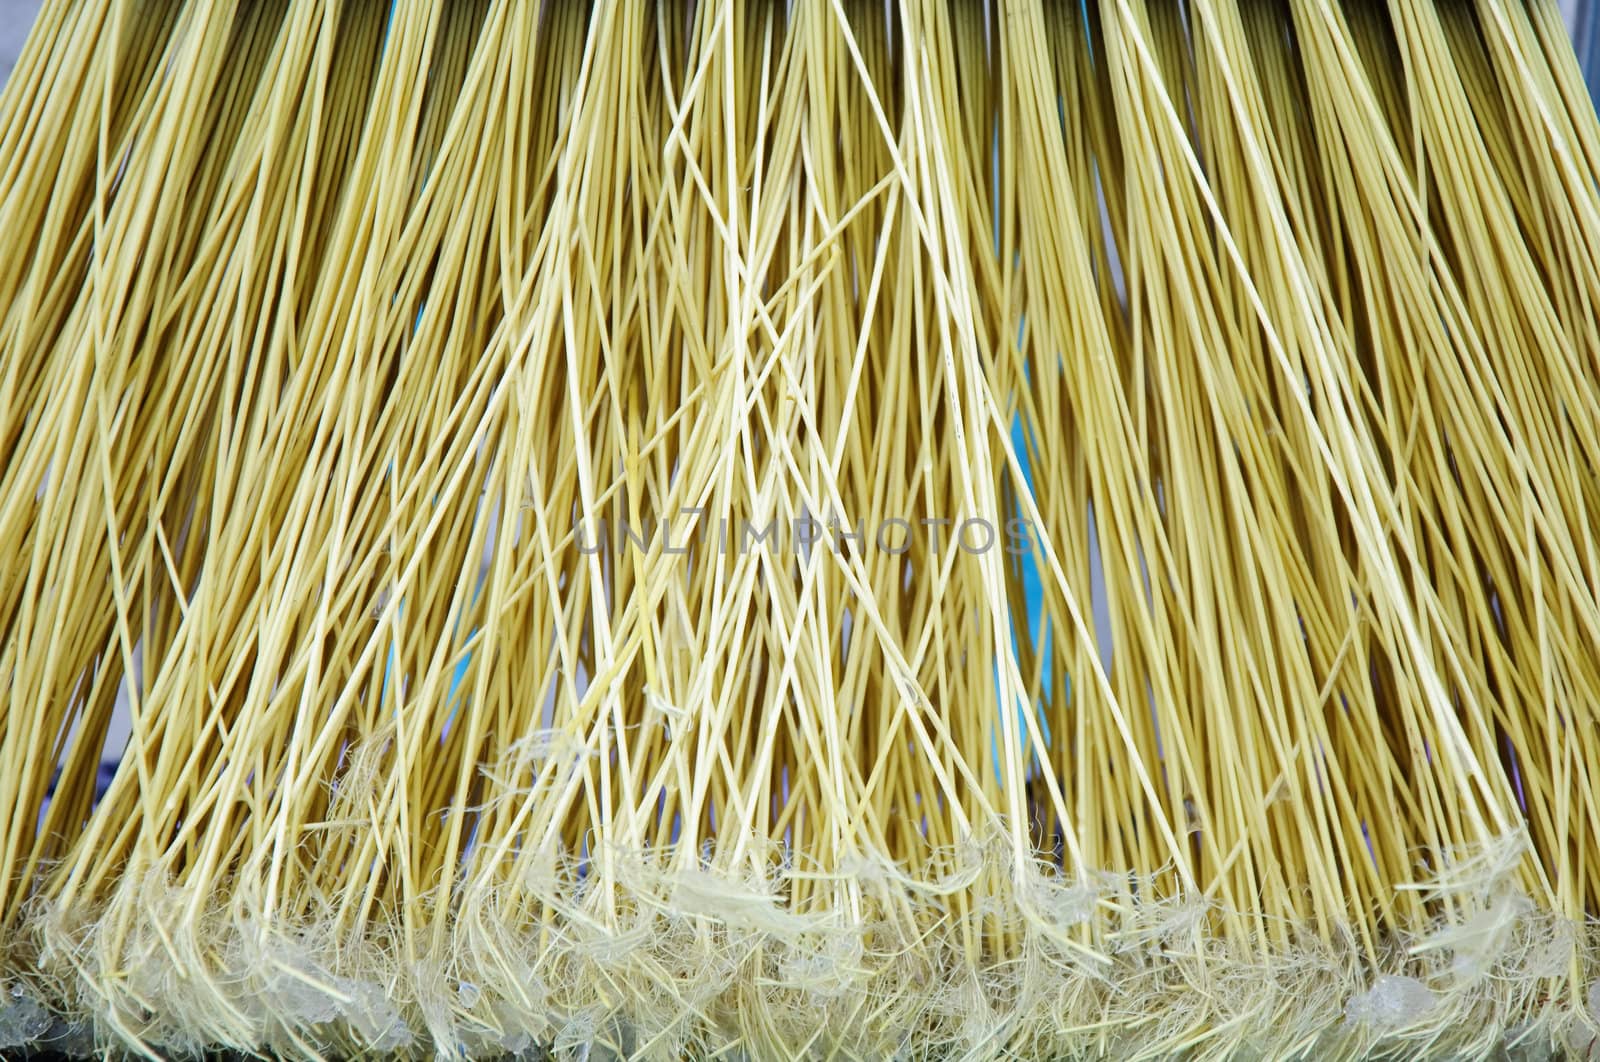 a close-up broom